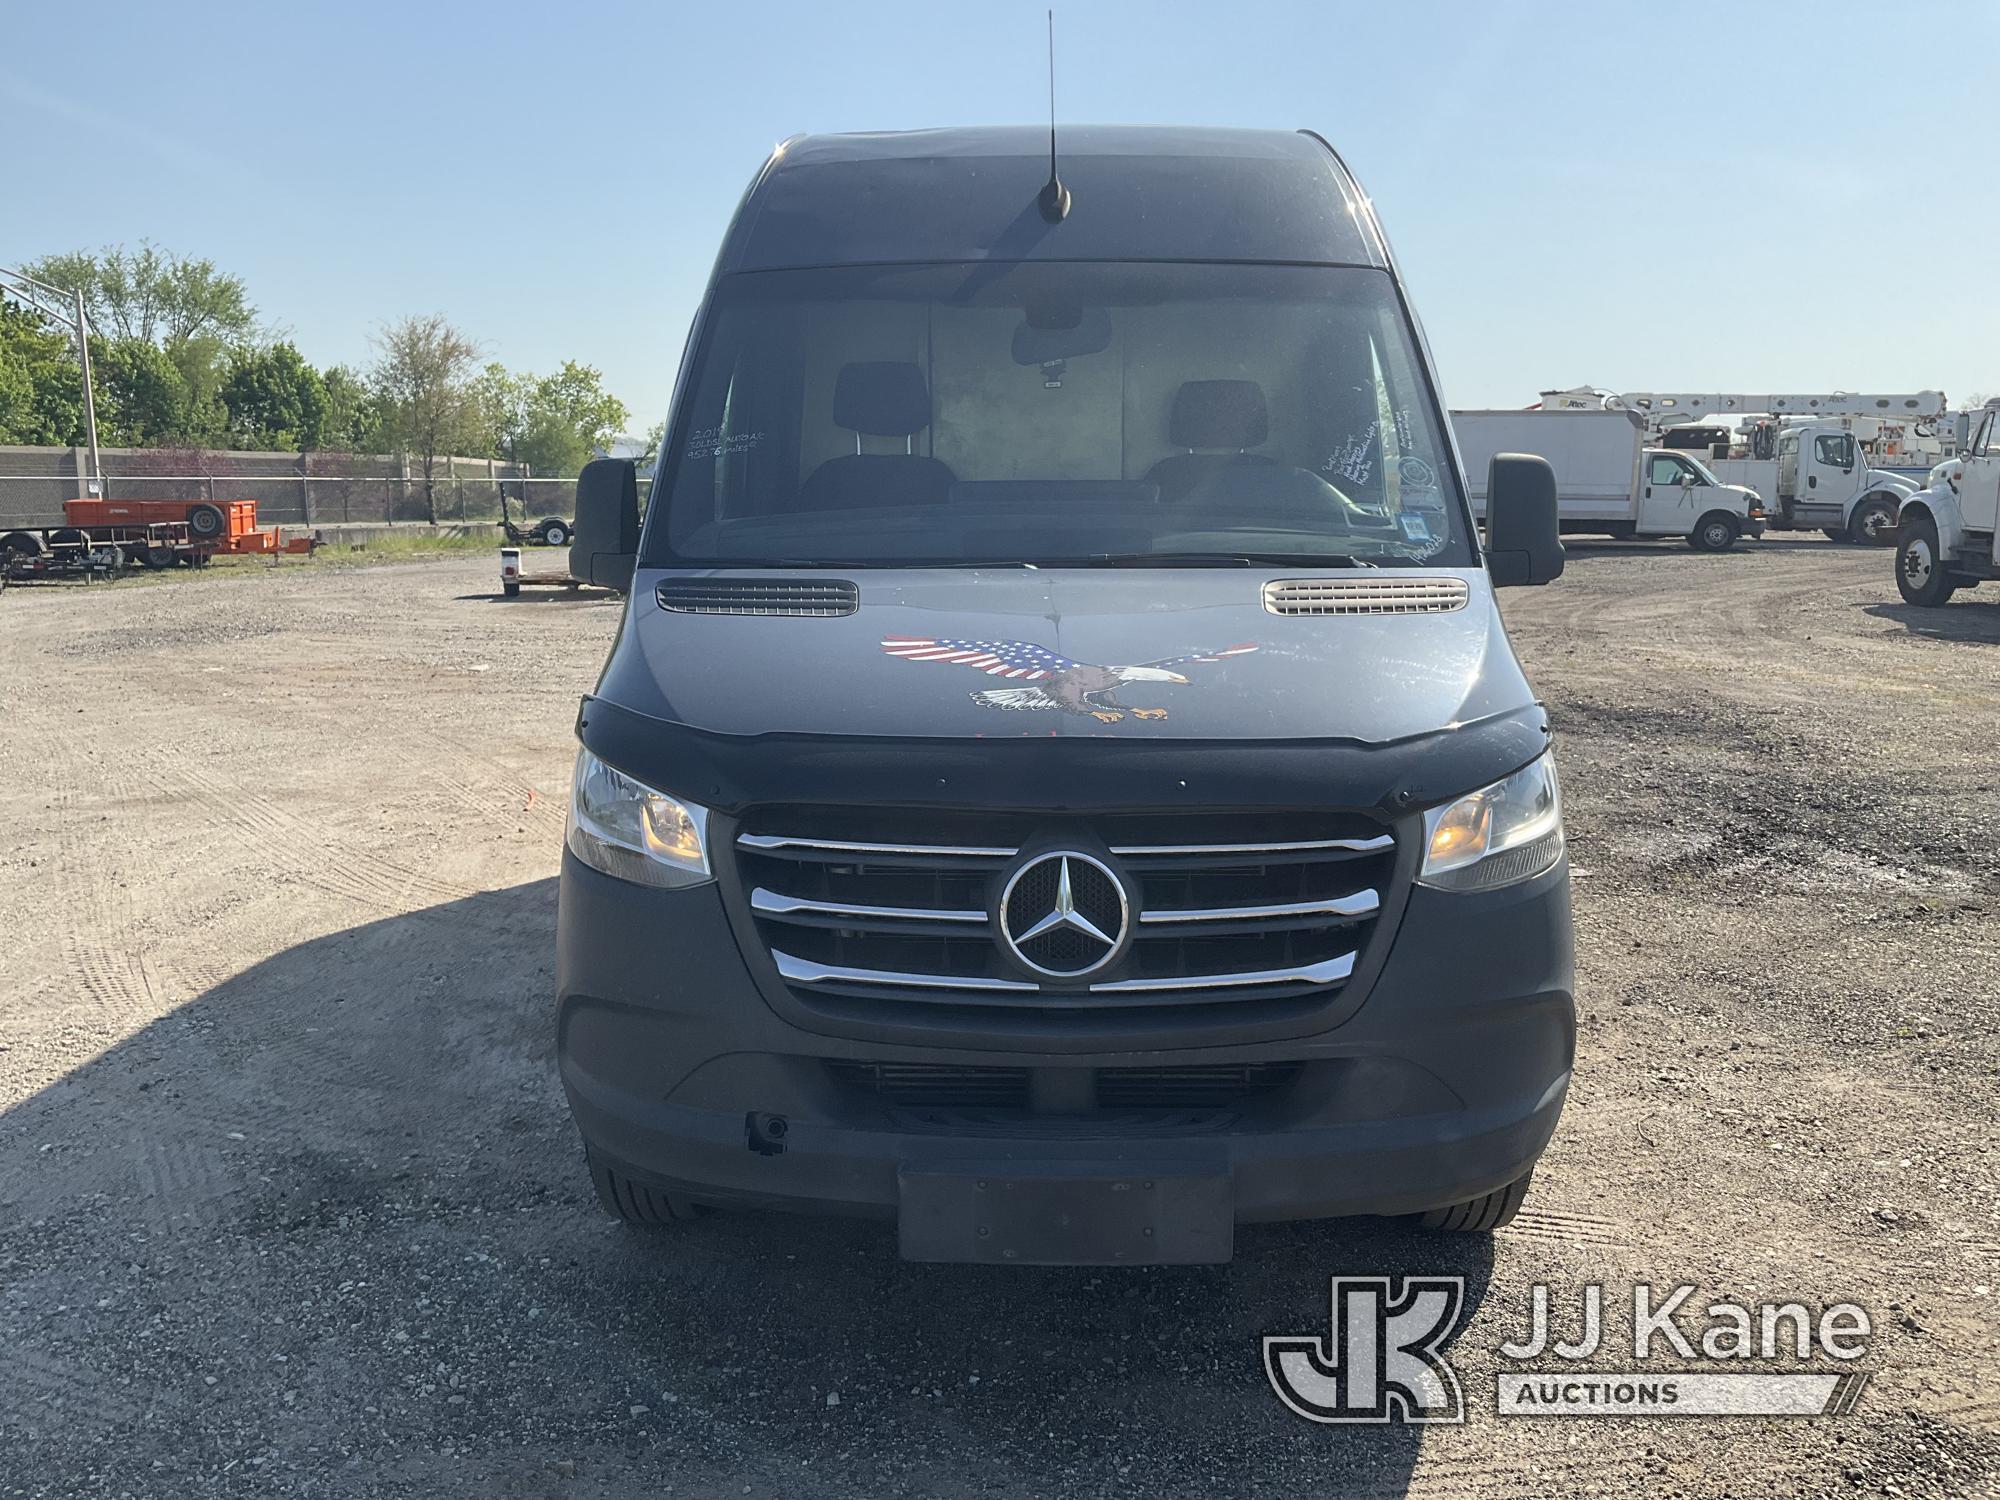 (Plymouth Meeting, PA) 2019 Mercedes-Benz 3500 Sprinter Cargo Van Runs & Moves, Body & Rust Damage,